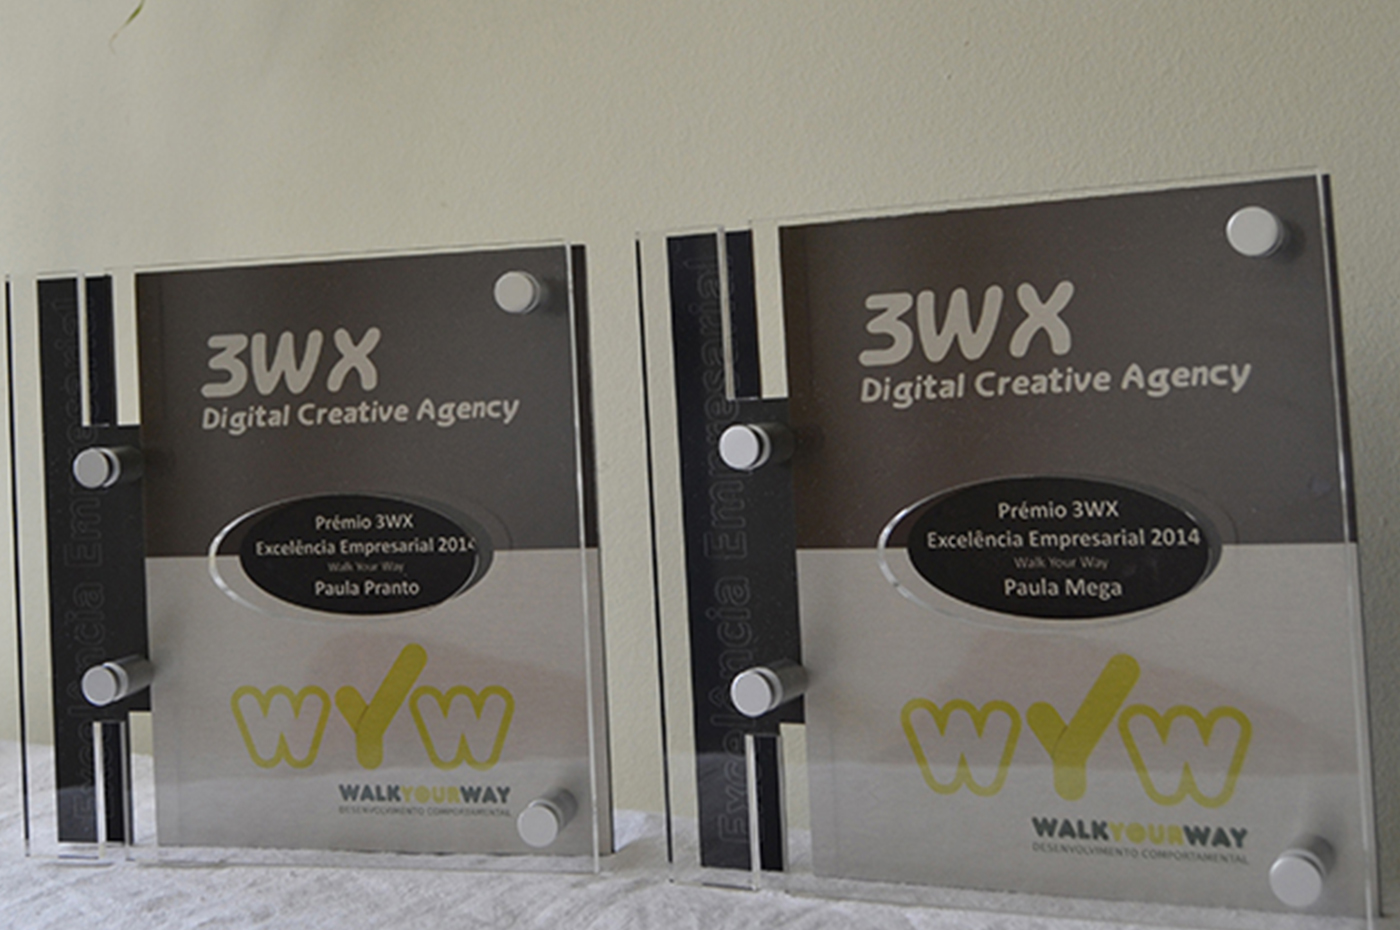 [:pt]Walk Your Way ganha prémio de Excelência Empresarial da 3WX[:]